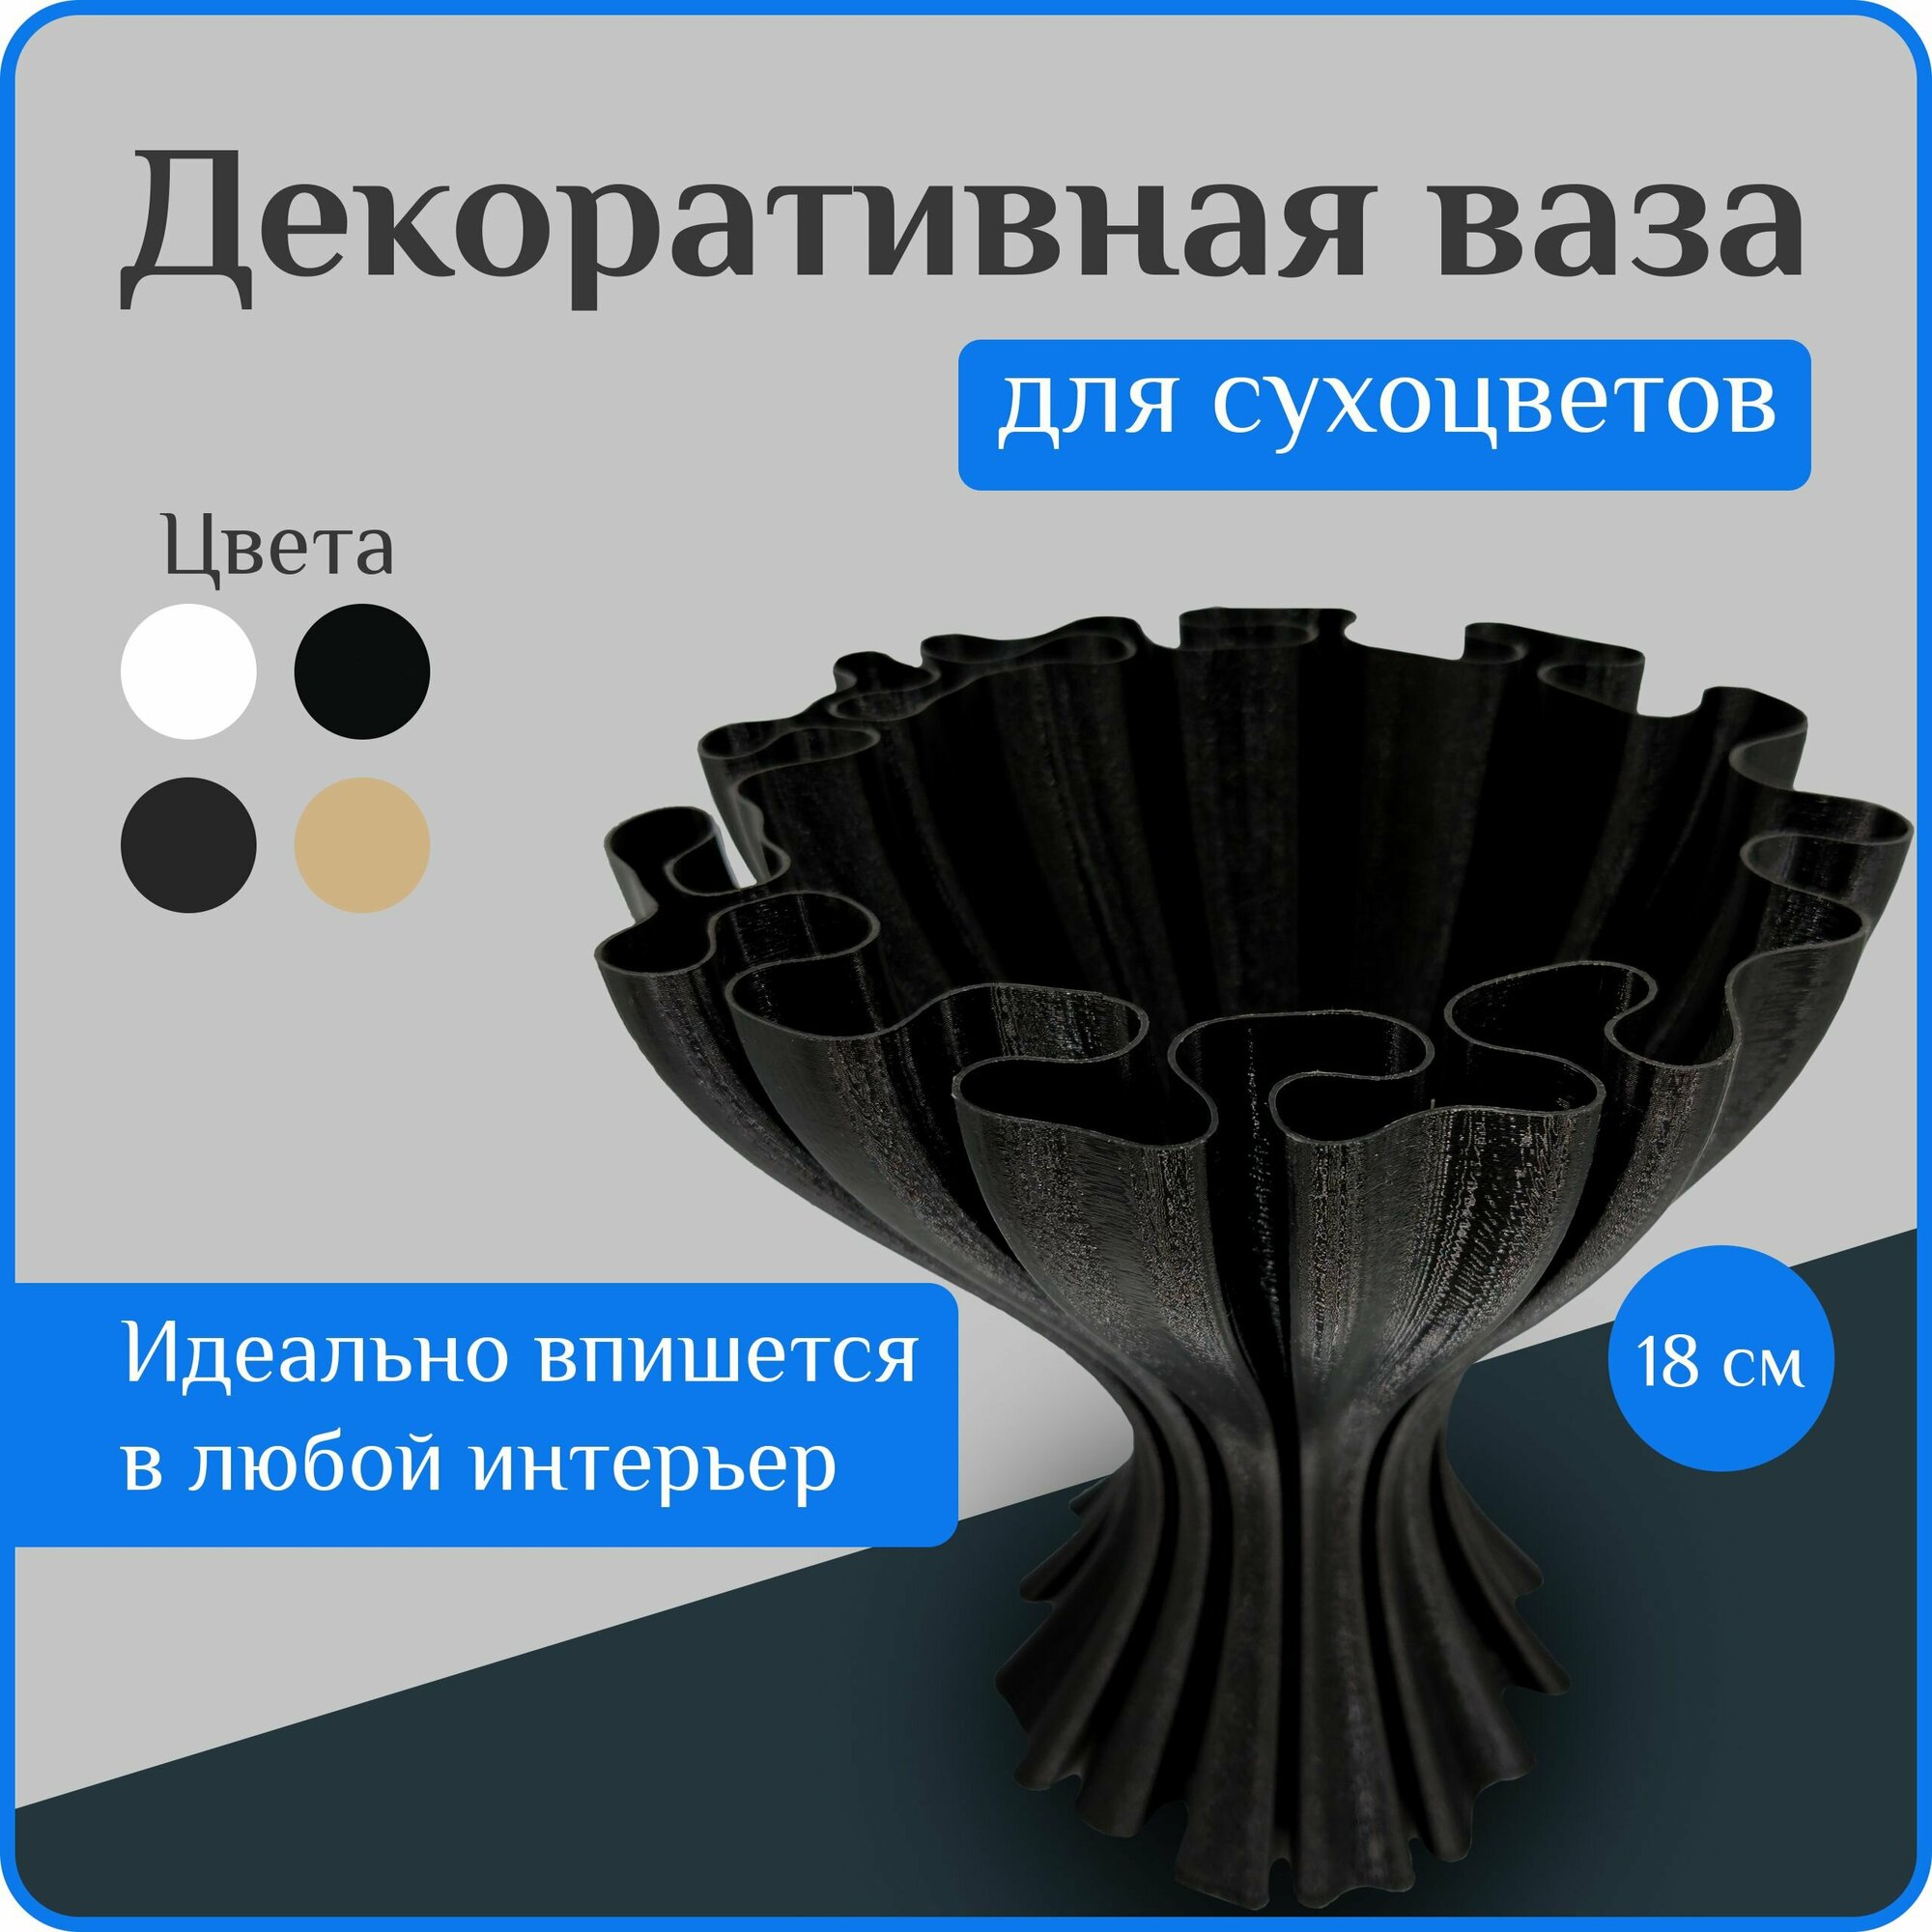 Ваза декоративная интерьерная "Черная", ваза для сухоцветов, вазы для декора, 18 см, пластик